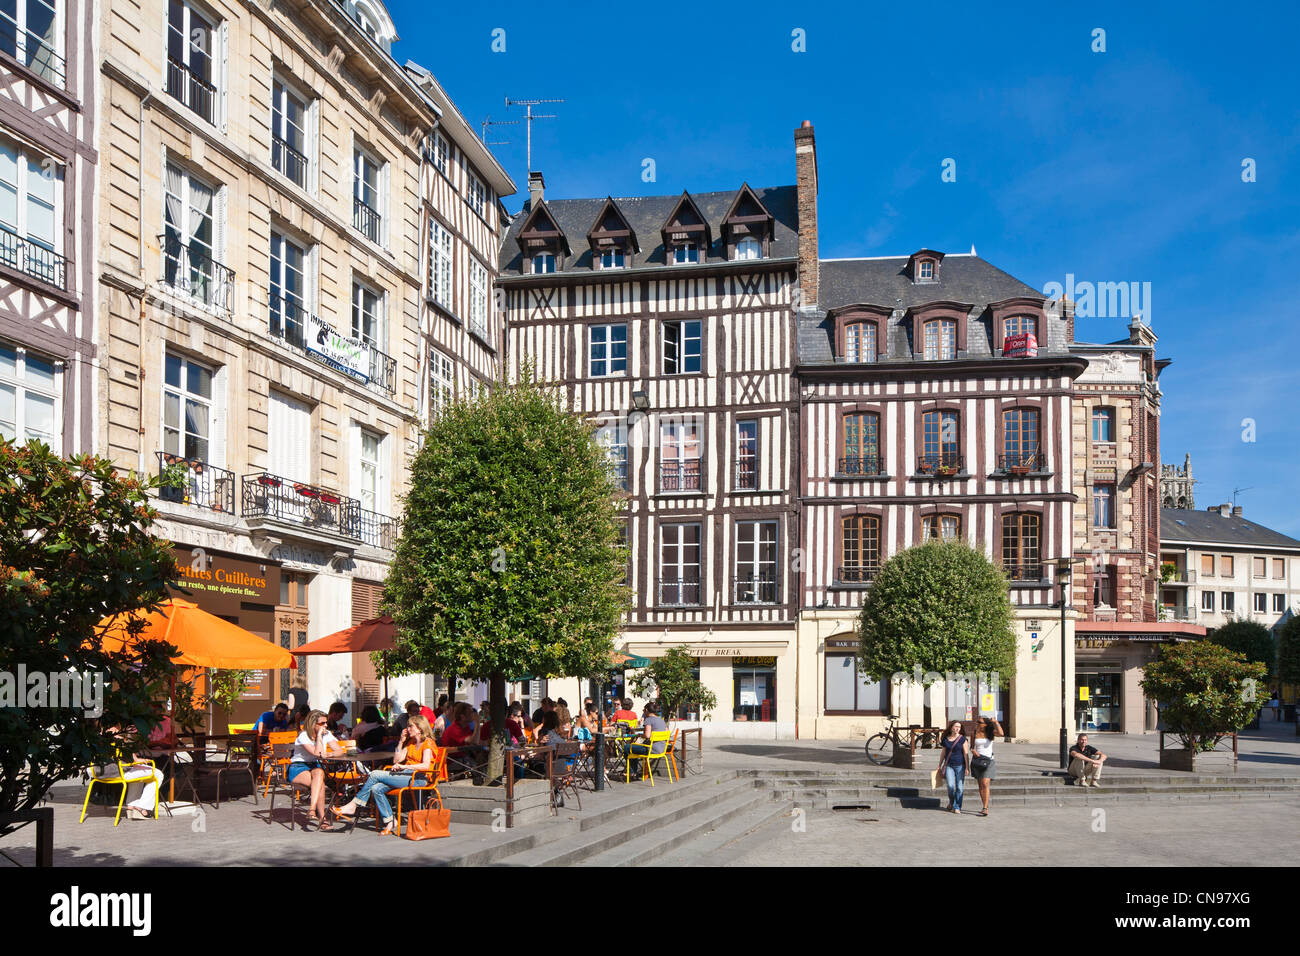 France, Seine Maritime, Rouen, Place de la Pucelle en hommage à Jeanne d'Arc brûlée vive dans la ville Banque D'Images